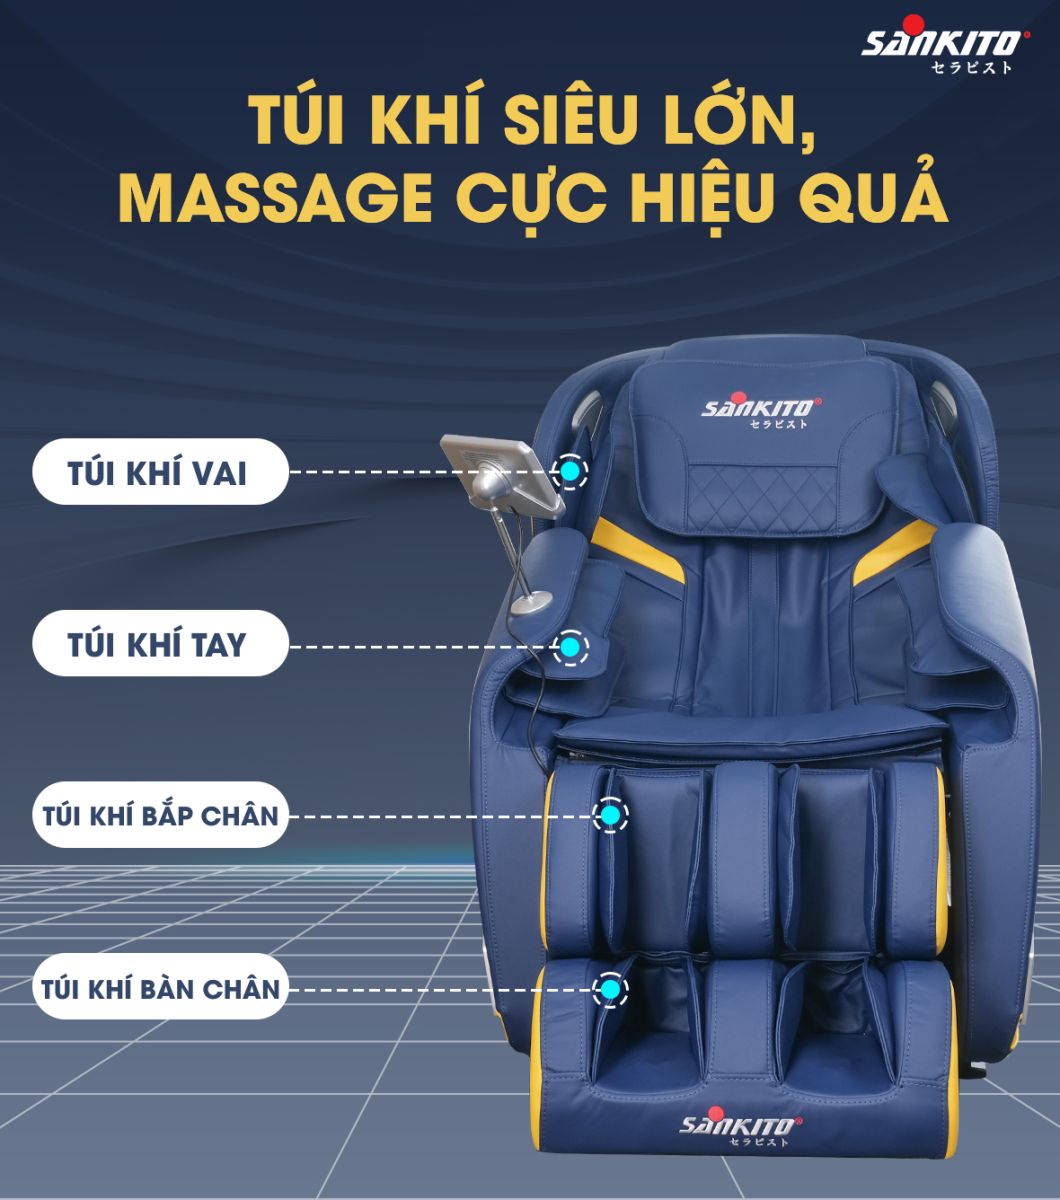 Thao tác massage tự động, chuyên nghiệp